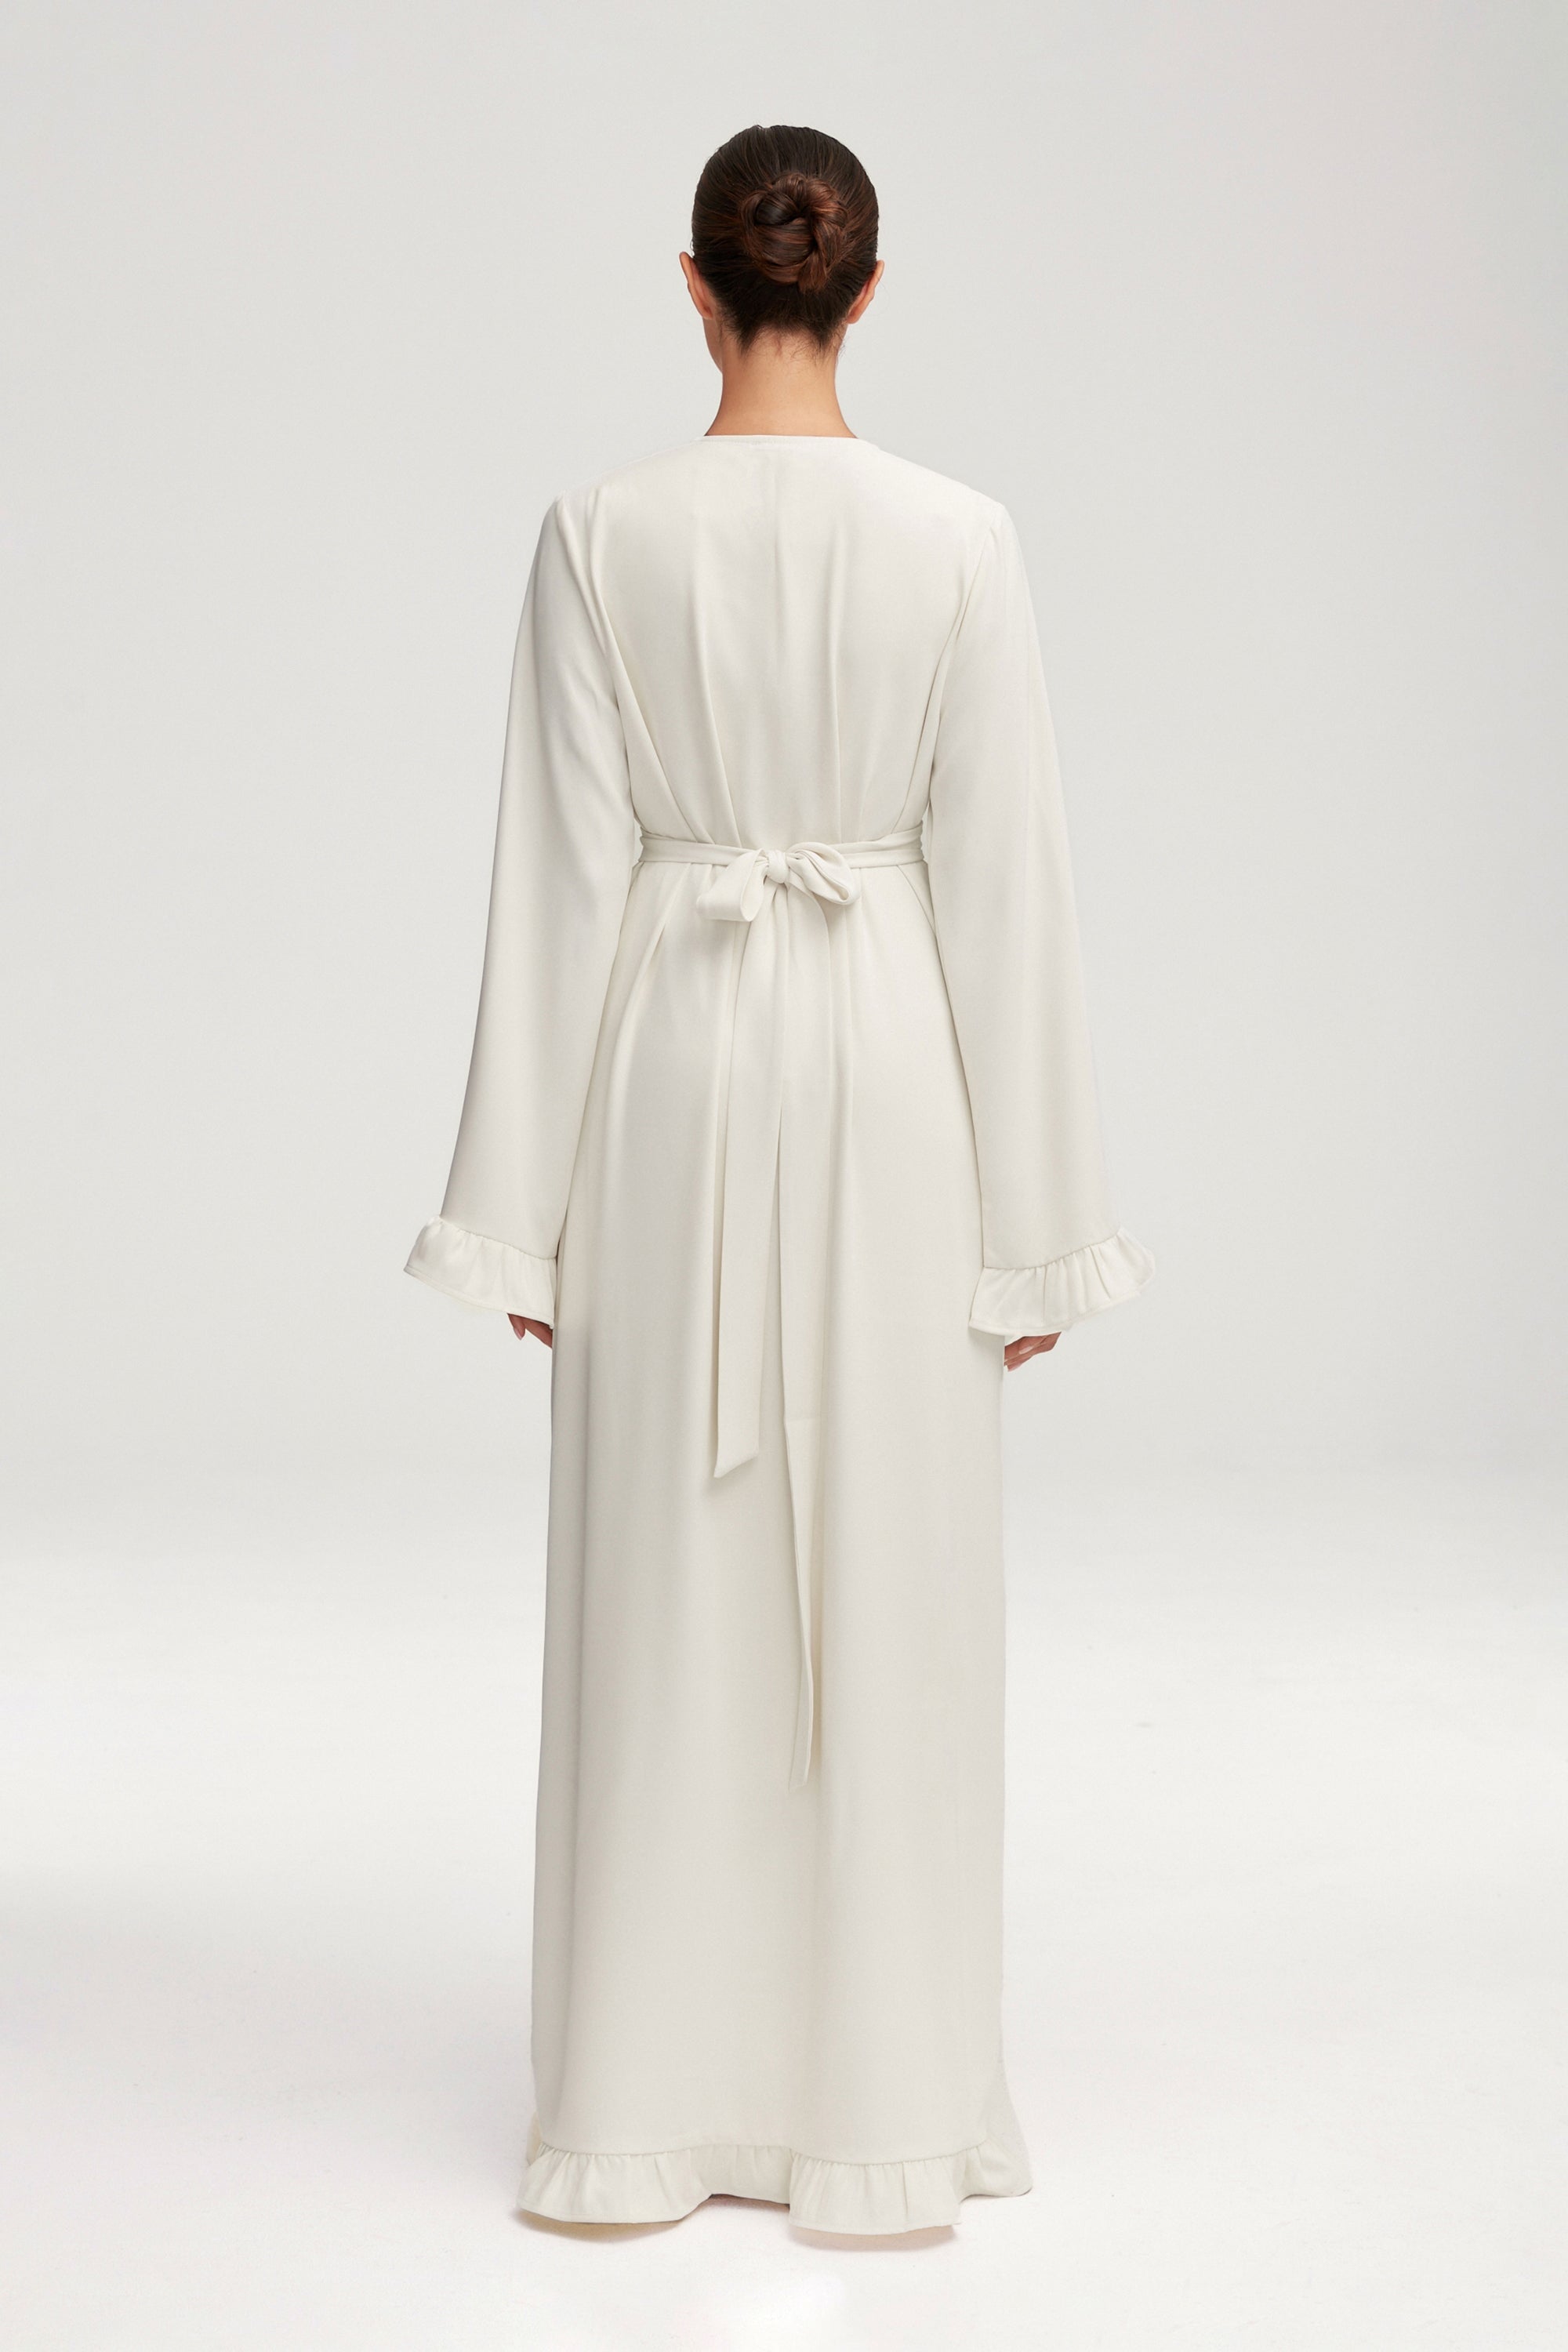 Mariam Ruffle Open Abaya - White Clothing epschoolboard 